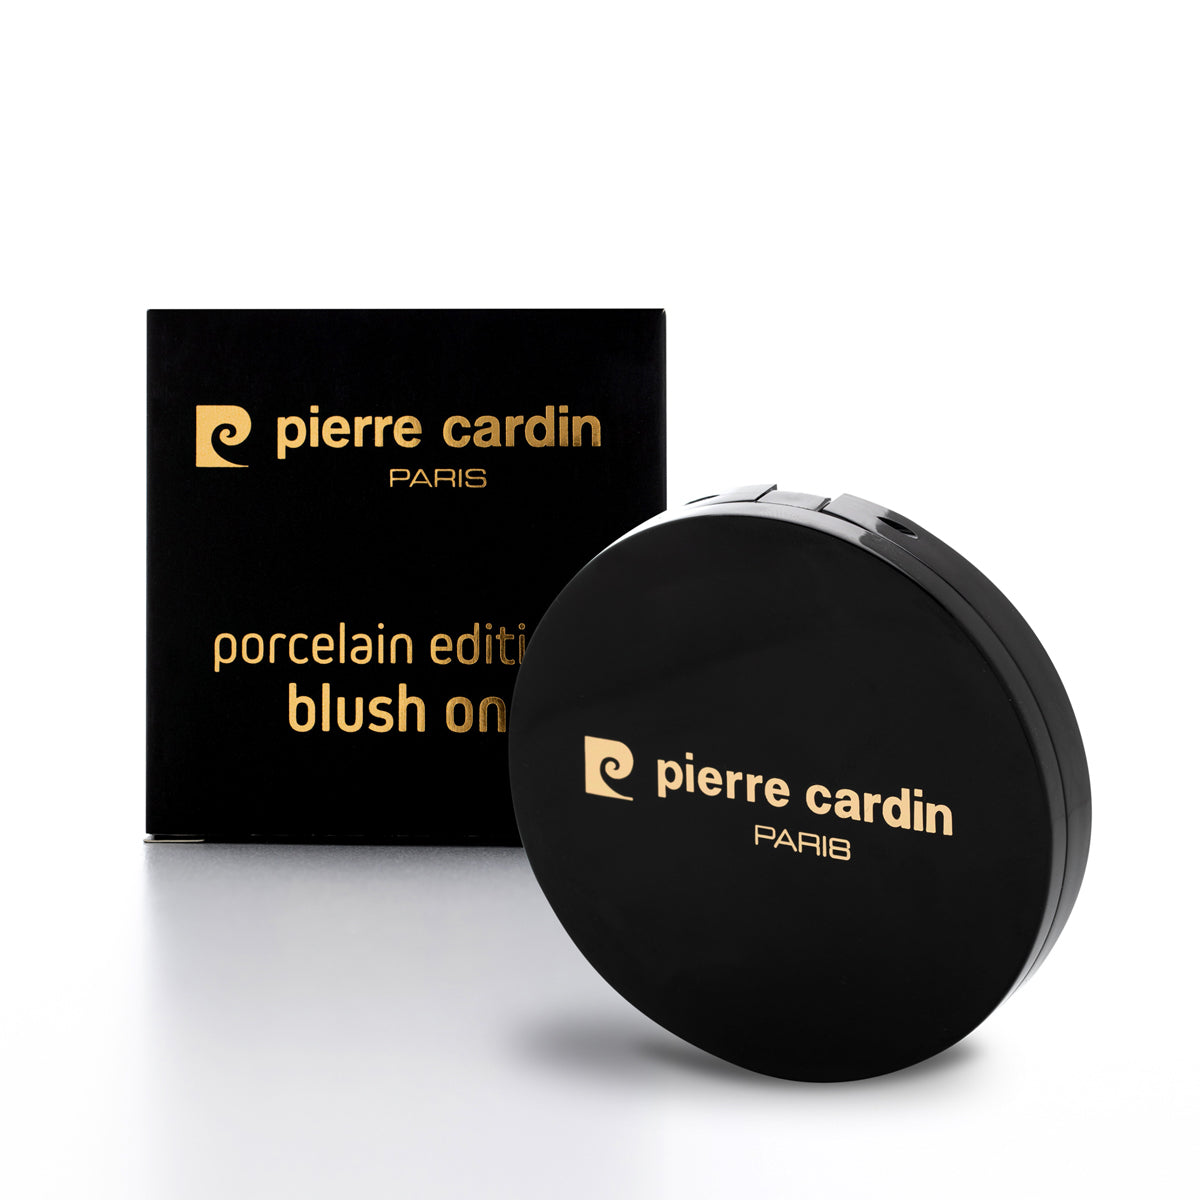 Pierre Cardin Edition Porcelaine Blush Sur Melon 916 - 5 gr